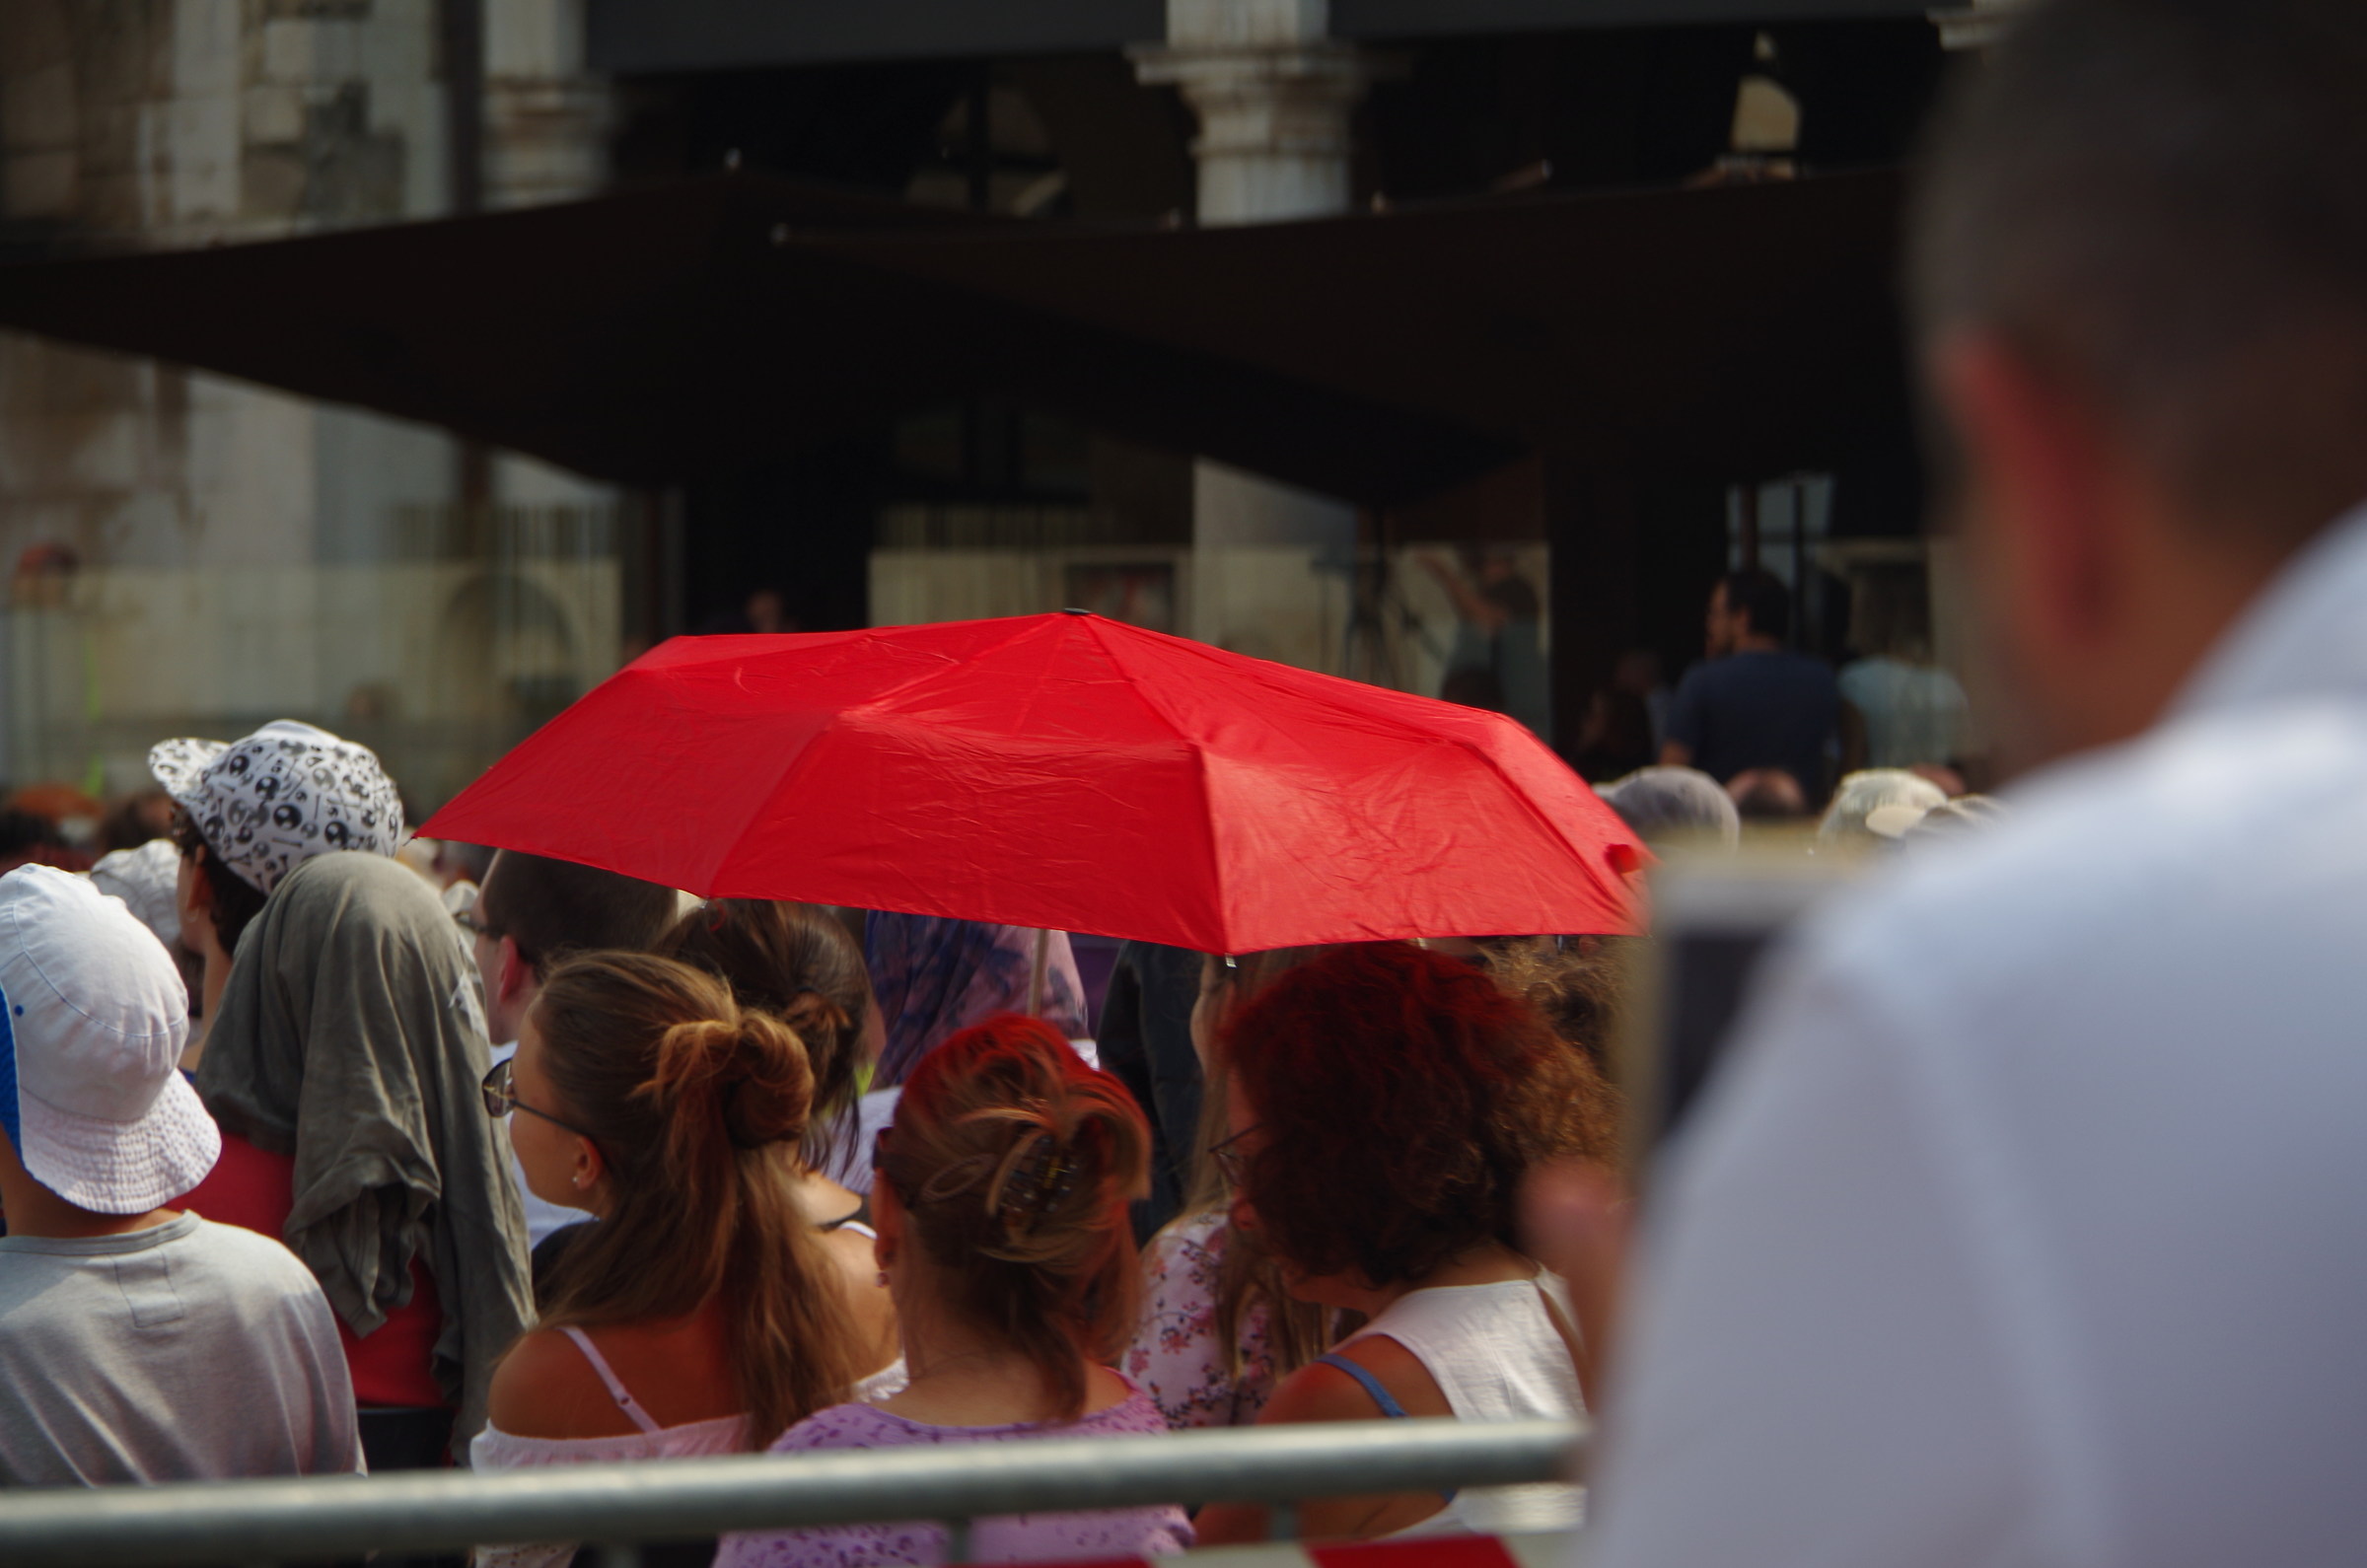 The Red umbrella...